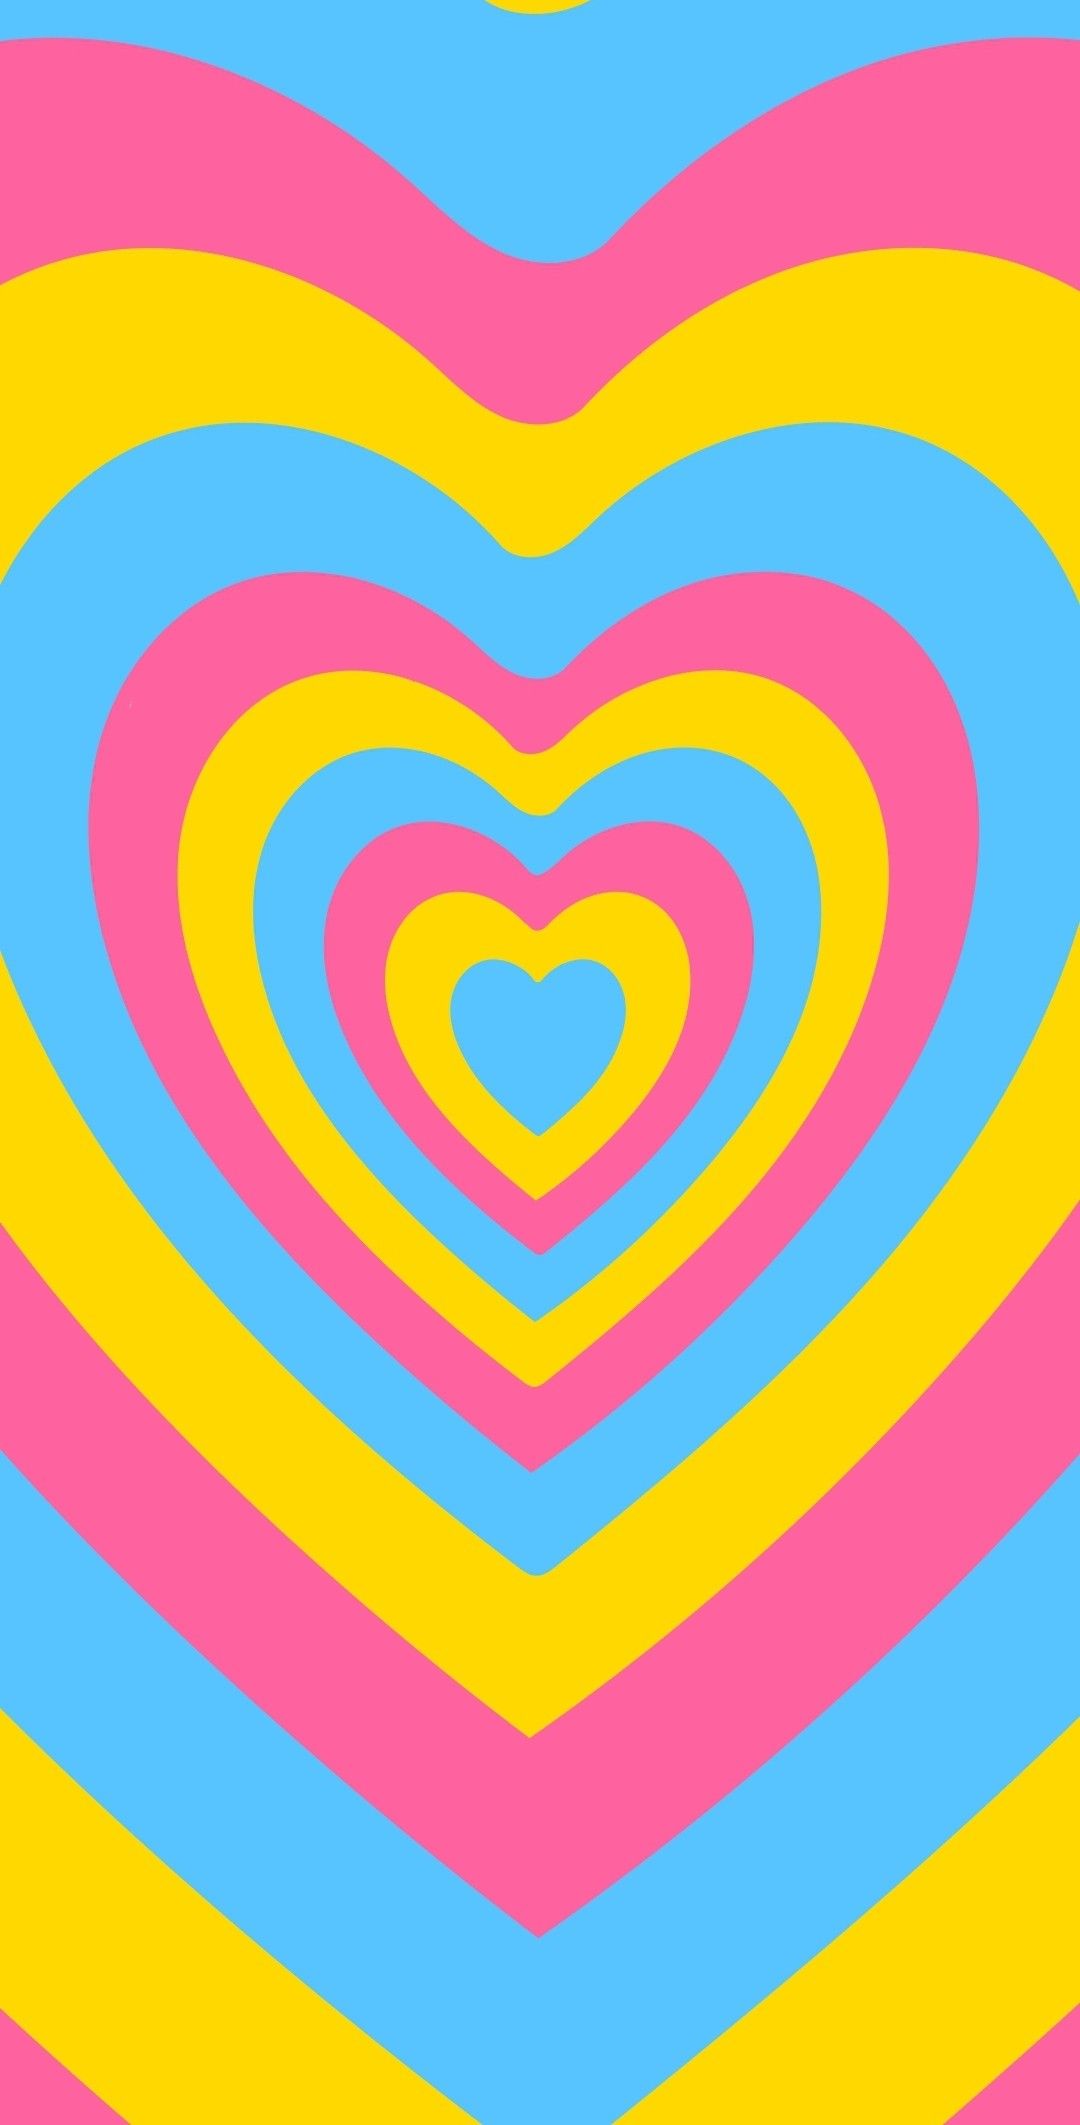 54 Powrpuff girls hearts wallpapers ideas heart wallpaper 1080x2125